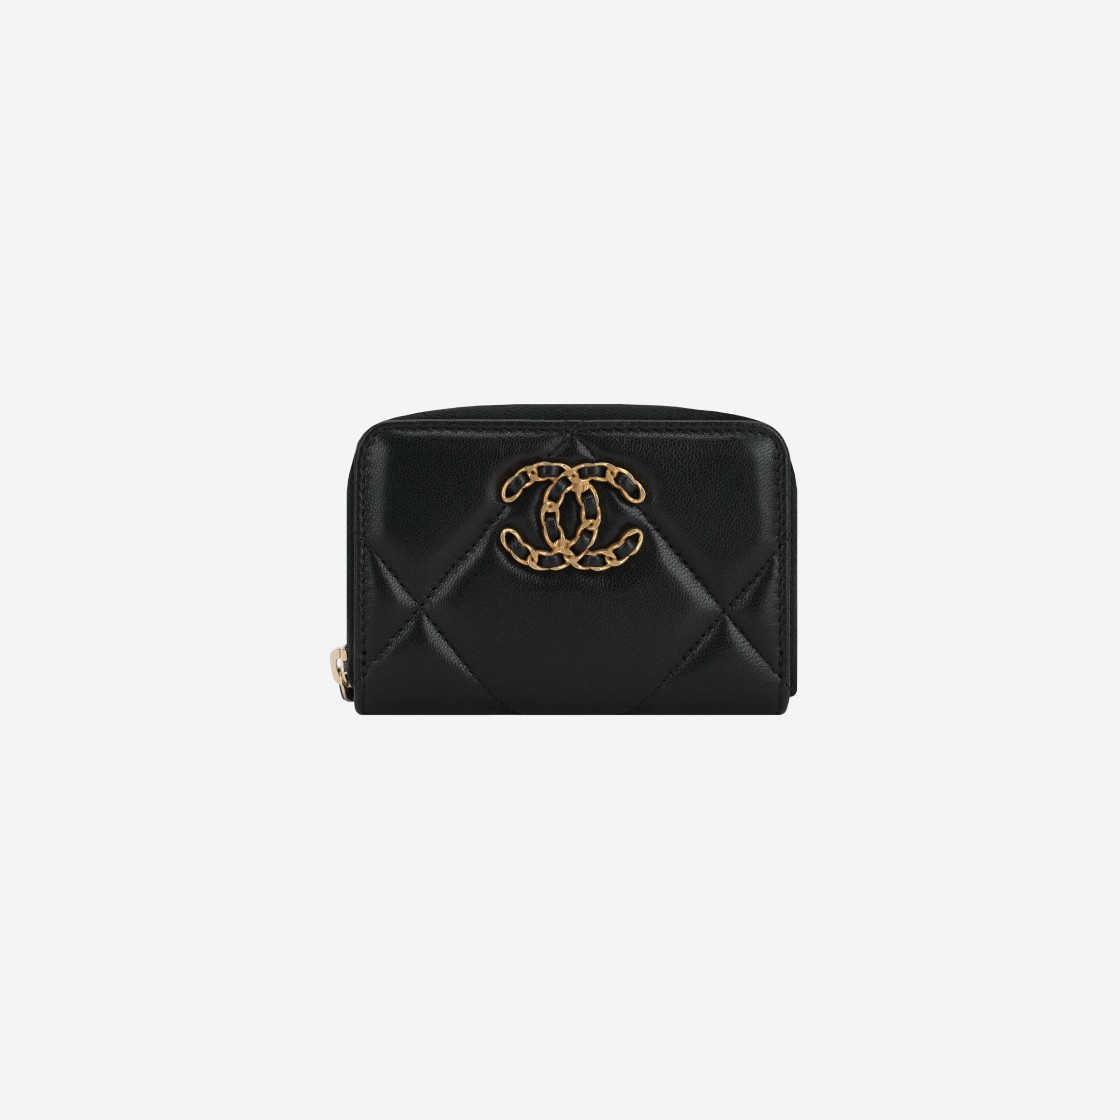 샤넬 19 지퍼 코인 지갑 램스킨 & 골드 메탈 블랙, Chanel